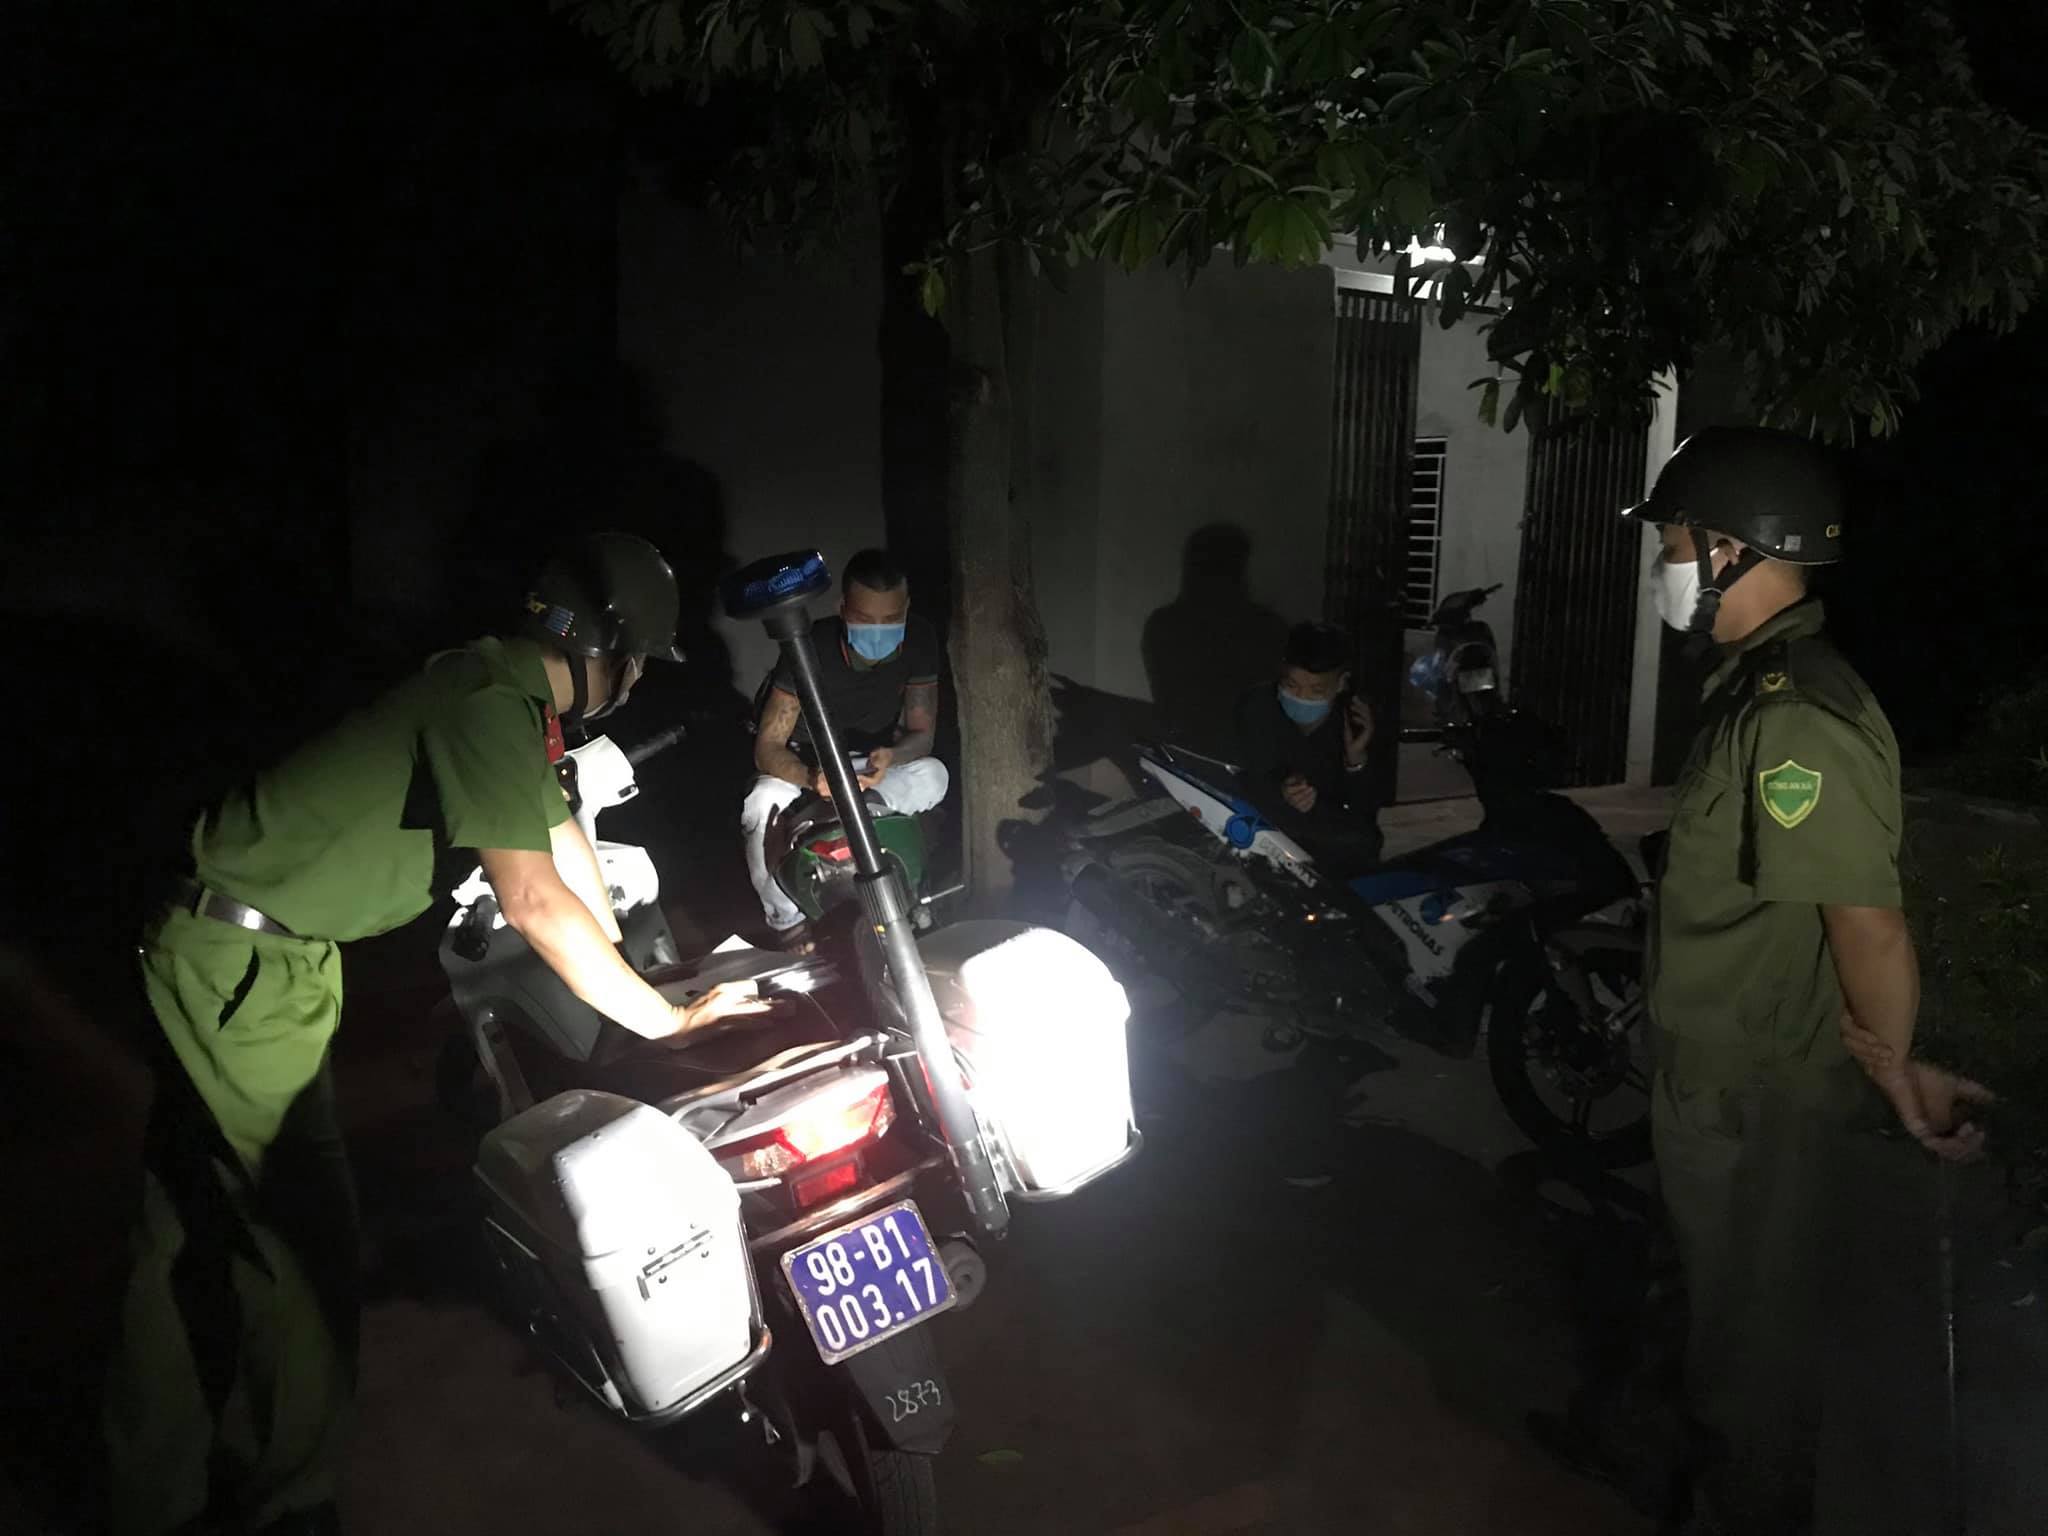 Công an huyện Lục Ngạn, tỉnh Bắc Giang thực hiện công tác tuần tra, kiểm soát, xử phạt những người vi phạm để đảm bảo mọi người chấp hành các quy định phòng, chống dịch